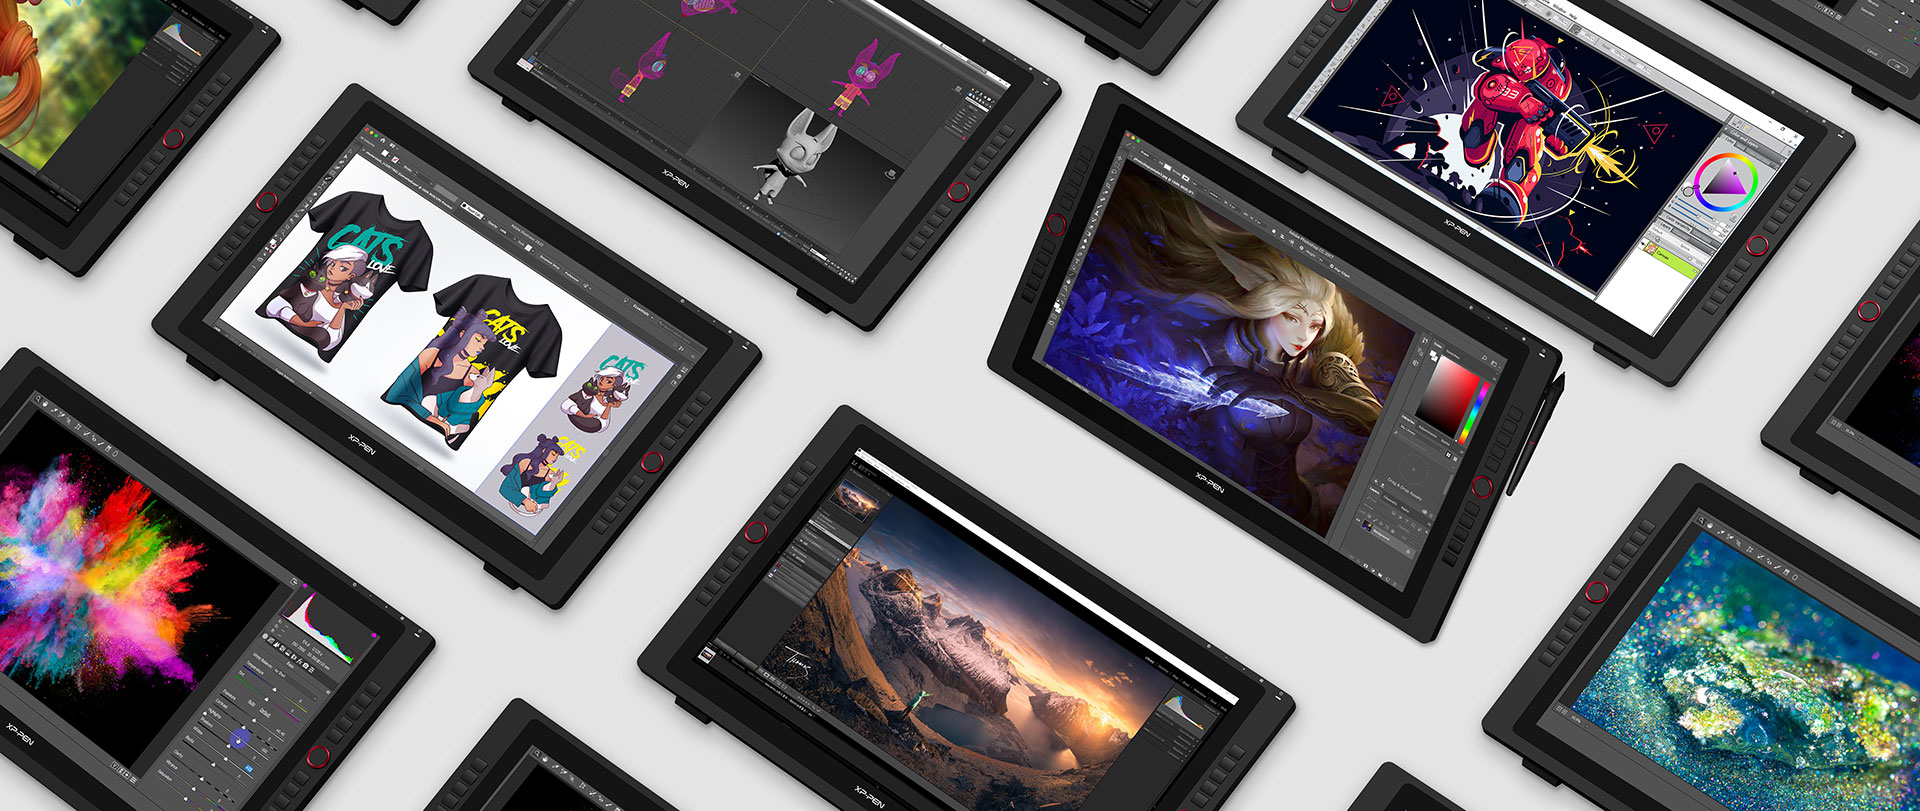 tableta digitalizadora XP-Pen Artist 24 Pro compatible con Windows , MAc OS y software de arte digital popular 